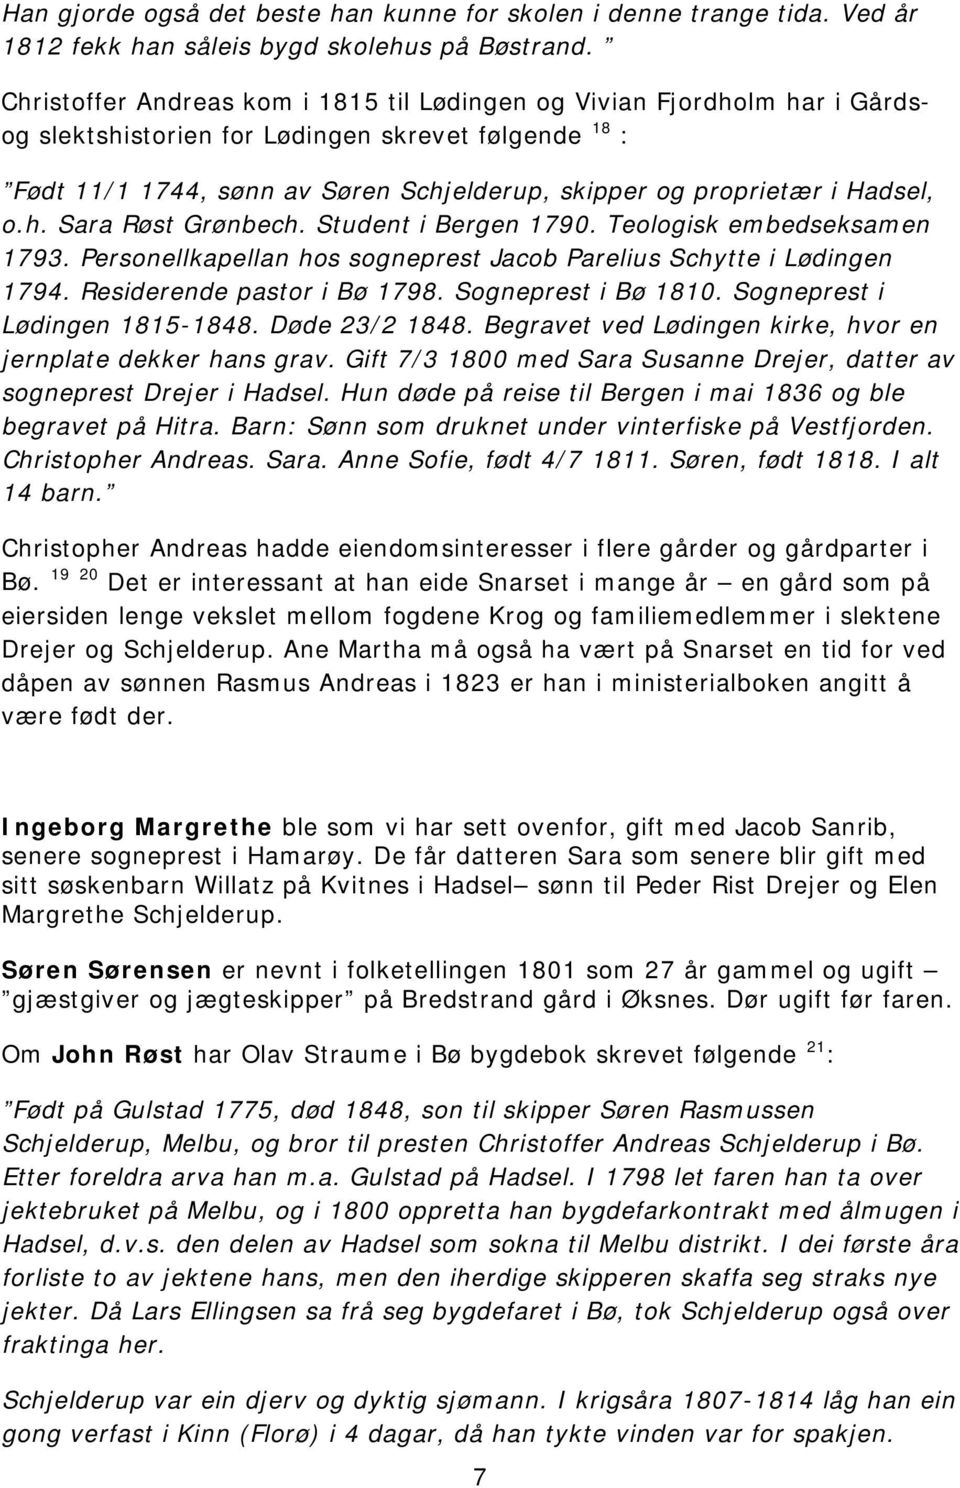 Hadsel, o.h. Sara Røst Grønbech. Student i Bergen 1790. Teologisk embedseksamen 1793. Personellkapellan hos sogneprest Jacob Parelius Schytte i Lødingen 1794. Residerende pastor i Bø 1798.